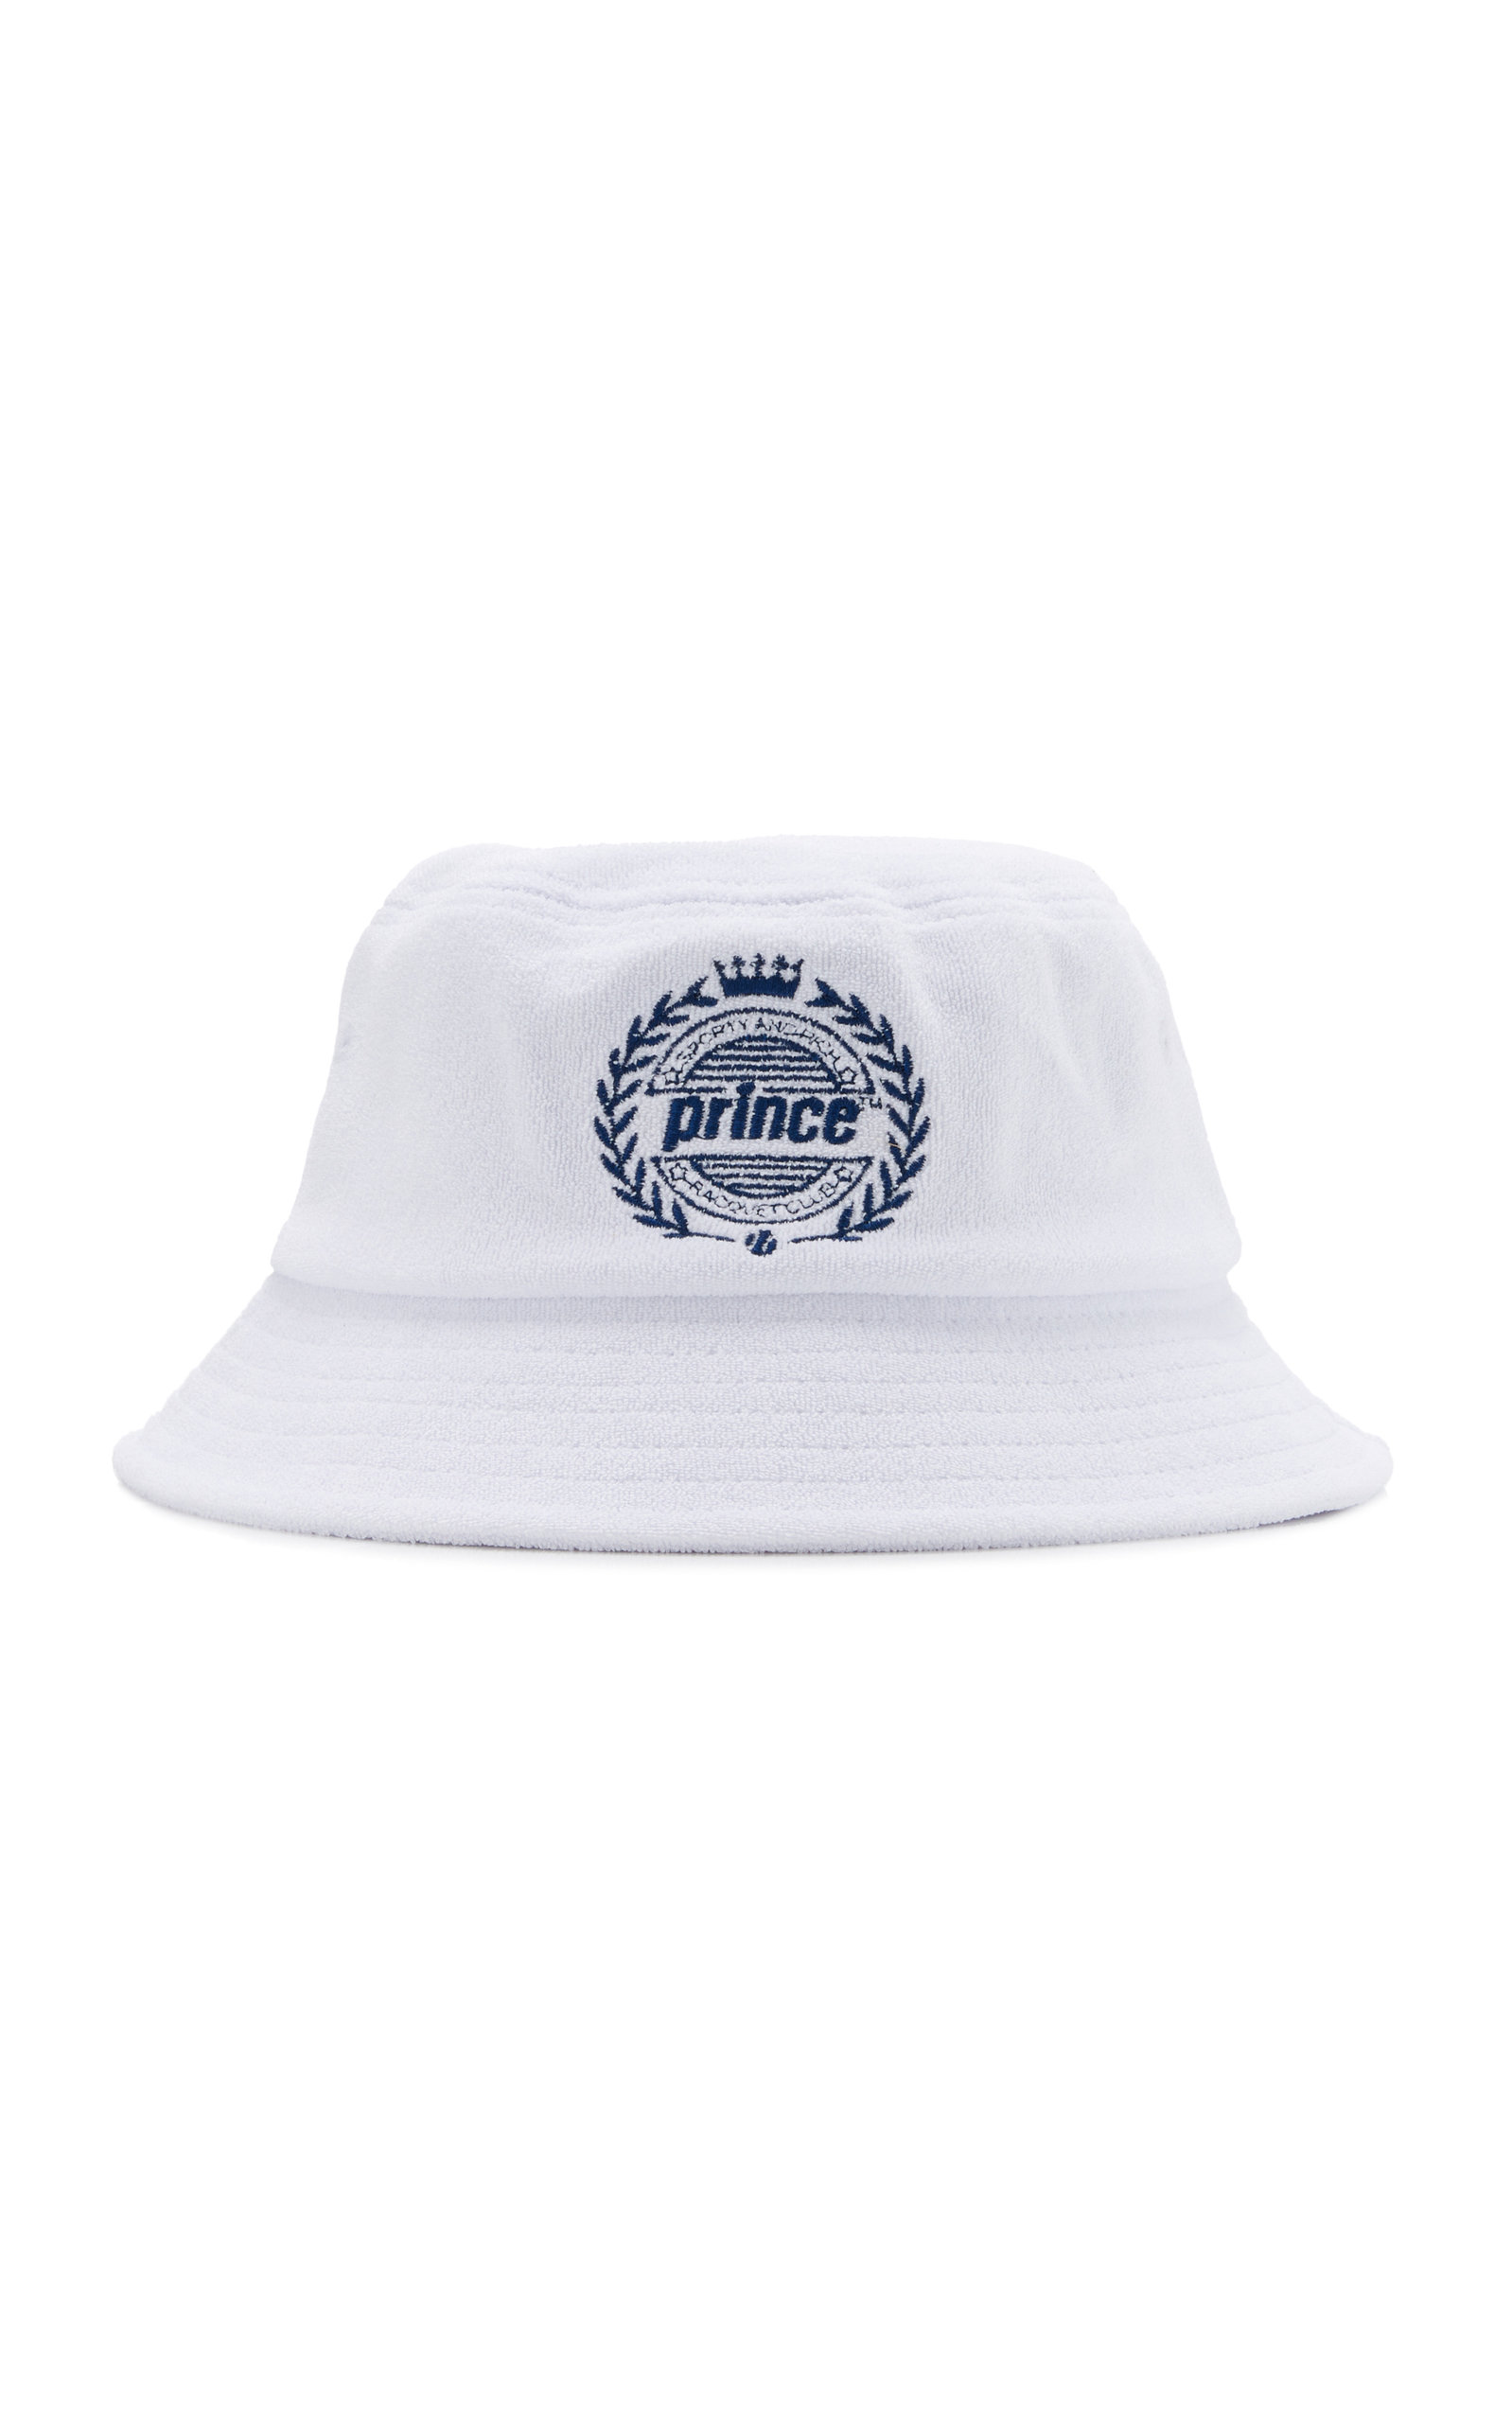 Sporty & Rich - Women's Prince Cotton Bucket Hat - White - OS - Moda Operandi